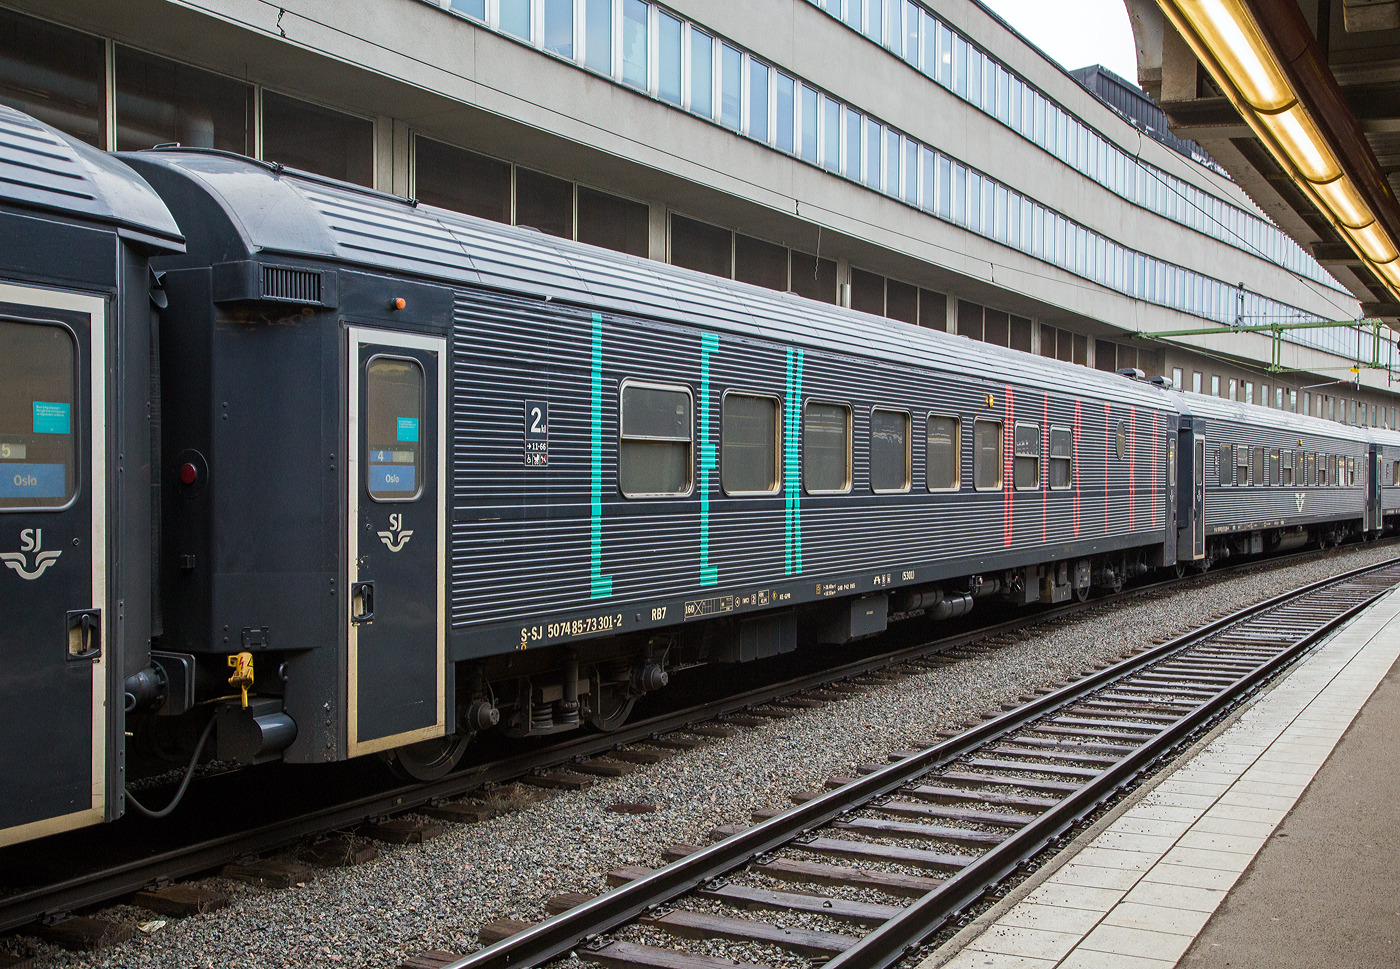 Der SJ Bistro- und Familienwagen 5301 der Gattung RB7, S-SJ 50 74 85-73 391-2, der SJ (Statens Jrnvgar AB, ehemaligen schwedische Staatsbahnen), ex SJ BFS9A 530, am 21 Mrz 2019 eingereiht in einem Personenzug nach Oslo im Bahnhof Stockholm Central (Stockholm Hbf). Der Wagen ist gekennzeichnet mit BISTRO und LEK (fr Spiel).

Ursprungswagen BFS9
Mitte der 1990er Jahre begann SJ mit dem Umbau von Waggons aus den 1980er Jahren im Rahmen des InterRegio-Konzepts, fr den Personenverkehr auf mittleren bis langen Strecken. InterRegio war eine Ergnzung zum InterCity-Verkehr auf lngeren Strecken. Die Ursprungswagen BFS9 waren 31 Wagen die zwischen 1994-1998 von Kalmar Verkstads AB in Verkstad, aus Wagen der Gattung A7 bzw. B7 (Bauart der 1980er Jahre), zu 2. Klasse Reisezugwagen mit Laderaum und Kiosk umgebaut wurden.

Die Wagen erhielten eine neue Innenausstattung mit Laderaum und Kiosk sowie eine neue Farbgebung mit einem breiten roten Zierstreifen entlang der Wagenseiten. SJ gab das InterRegio-Konzept nach einigen Jahren auf und die Wagen wurden in allen Zuggattungen eingesetzt.

Im Jahr 2012 beschloss die SJ dann 20 dieser BFS9-Wagen in Bistrowagen mit Sitzecke und Spielzimmer fr Kinder umzubauen. Der erste RB7-Wagen wurde im Juli 2013 fertiggestellt. Das Umbauprojekt wurde jedoch zu teuer und verzgerte sich so sehr, dass die Umbaufirma Motala Train AB finanzielle Probleme bekam und 2014 eine Unternehmensumstrukturierung durchfhren musste. Aus diesem Grund wurden allerdings nur sechs Wagen umgebaut. Zwei im Umbau befindliche Wagen wurden nie fertiggestellt, sondern spter verschrottet.

Auen erhielten die umgebauten Wagen nun die schwarze Lackierung von der SJ und Beschriftung BISTRO und LEK (fr Spiel). Der Bistrobereich erhielt auer dem Bereich mit regulren Sitzpltzen keine neuen eigenen Sitzpltze und kann daher eher als Kiosk betrachtet werden. Die RB7-Wagen sind teilweise ein Ersatz fr die frheren B8-Wagen, die auch ber einen Spielbereich verfgten. Die Wagen verfgen auerdem ber einen Rollstuhllift, Behindertenpltze und ein Serviceabteil fr das Zugpersonal. Die Wagen haben zudem Wifi und sind klimatisiert. 

TECHNISCHE DATEN:
Umgebaute Anzahl: 6
Nummerierungen SJ : 5213, 5220, 5229, 5301-5303
Hersteller / Umbauer: Kalmar Verkstads AB (Verkstad) / Motala Train AB
Umbaujahre: 2013-2015
Spurweite: 1.435 mm (Normalspur)
Lnge ber Puffer: 26.400 mm
Wagenkastenlnge: 25.900 mm
Wagenkastenbreite: 3.080 mm
Hhe ber Schienenoberkante: 4.400 mm
Drehzapfenabstand: 18.500 mm
Achsstand im Drehgestell: 2.500 mm
Laufraddurchmesser: 980 mm (neu)
Drehgestellbauart: MD 80-E (Minden-Deutz)
Leergewicht: 49 t
Hchstgeschwindigkeit: 160 km/h
Sitzpltze in der 2. Klasse: 41, sowie 3 Rollstuhlpltze
Toiletten: 2 (geschlossenes System)
Bremsbauart: KE-GPR

Quelle: jrnvg.net 
